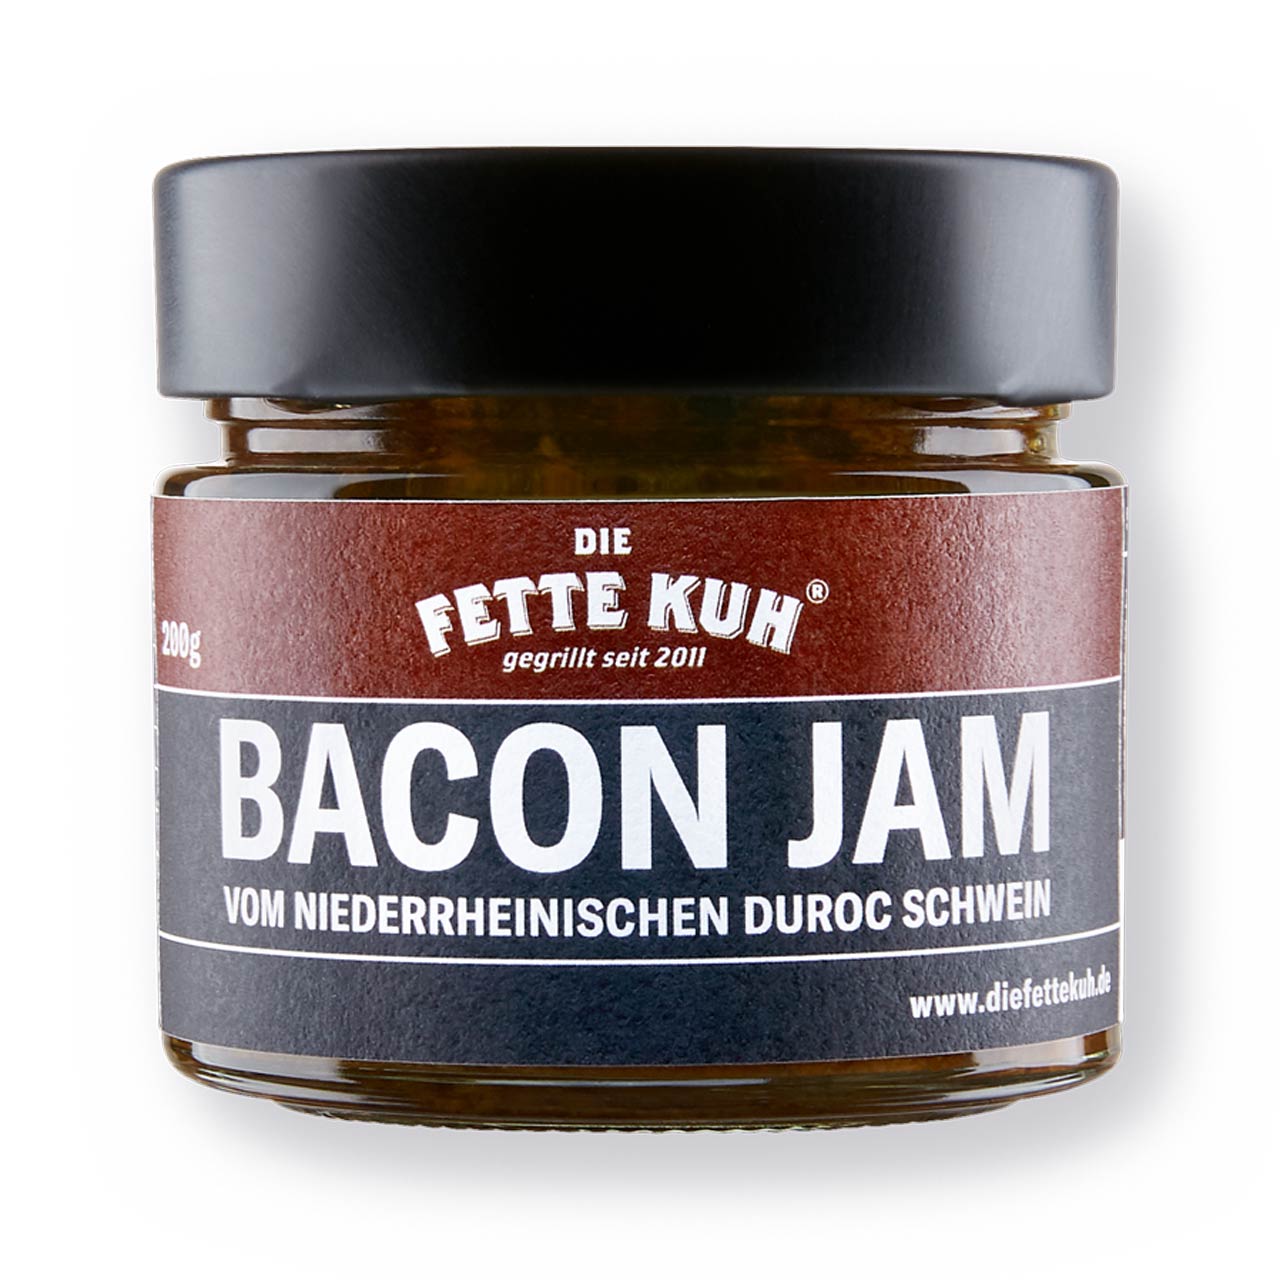 Die Fette Kuh Bacon Jam - 200 g